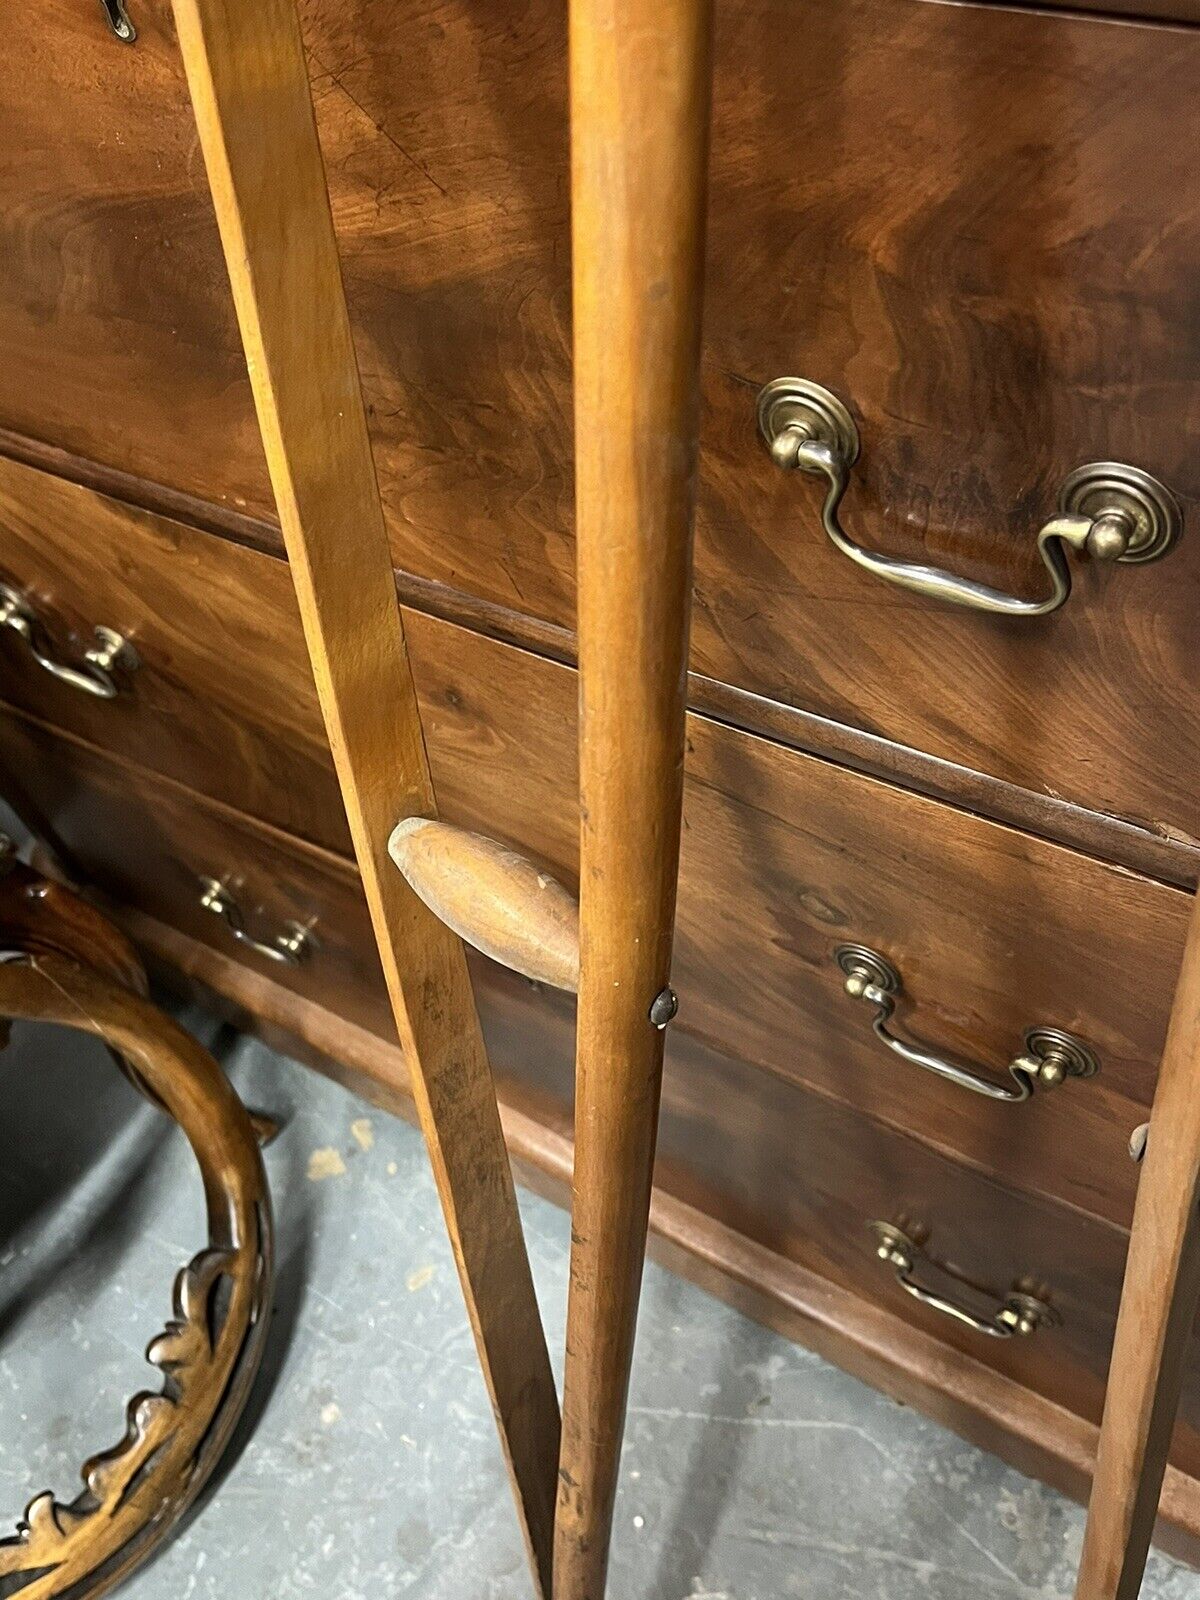 Pair Of WW1 Era Antique Crutches